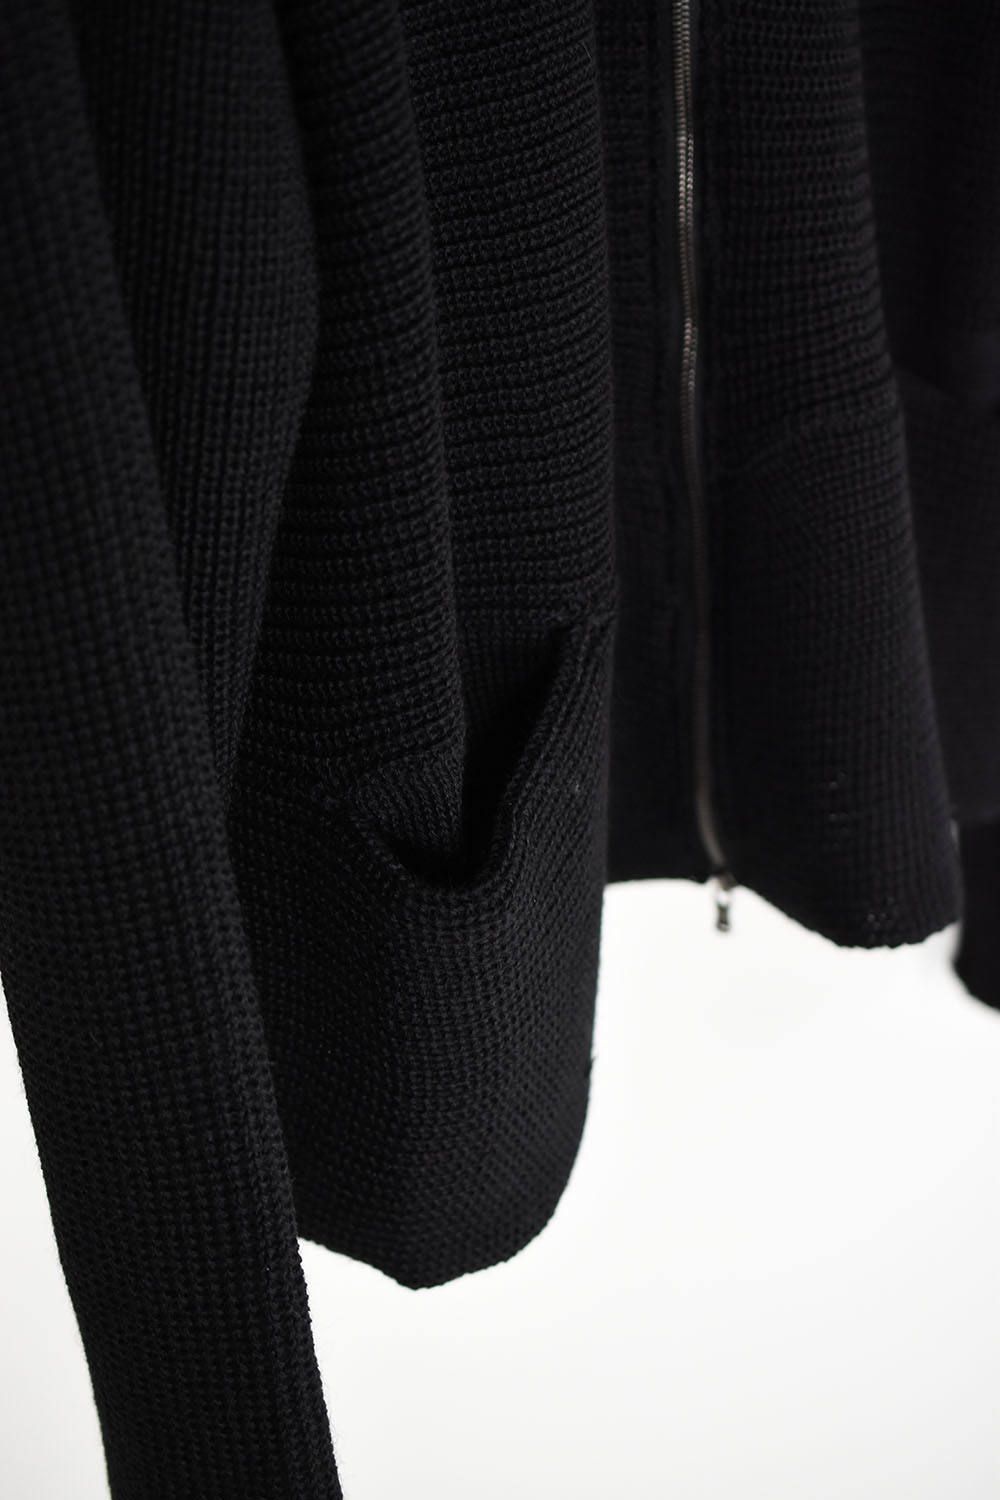 《ラスト1点!!》Wide Silhouette Knit Cardigan"Black"/ワイドシルエットニットカーディガン"ブラック"